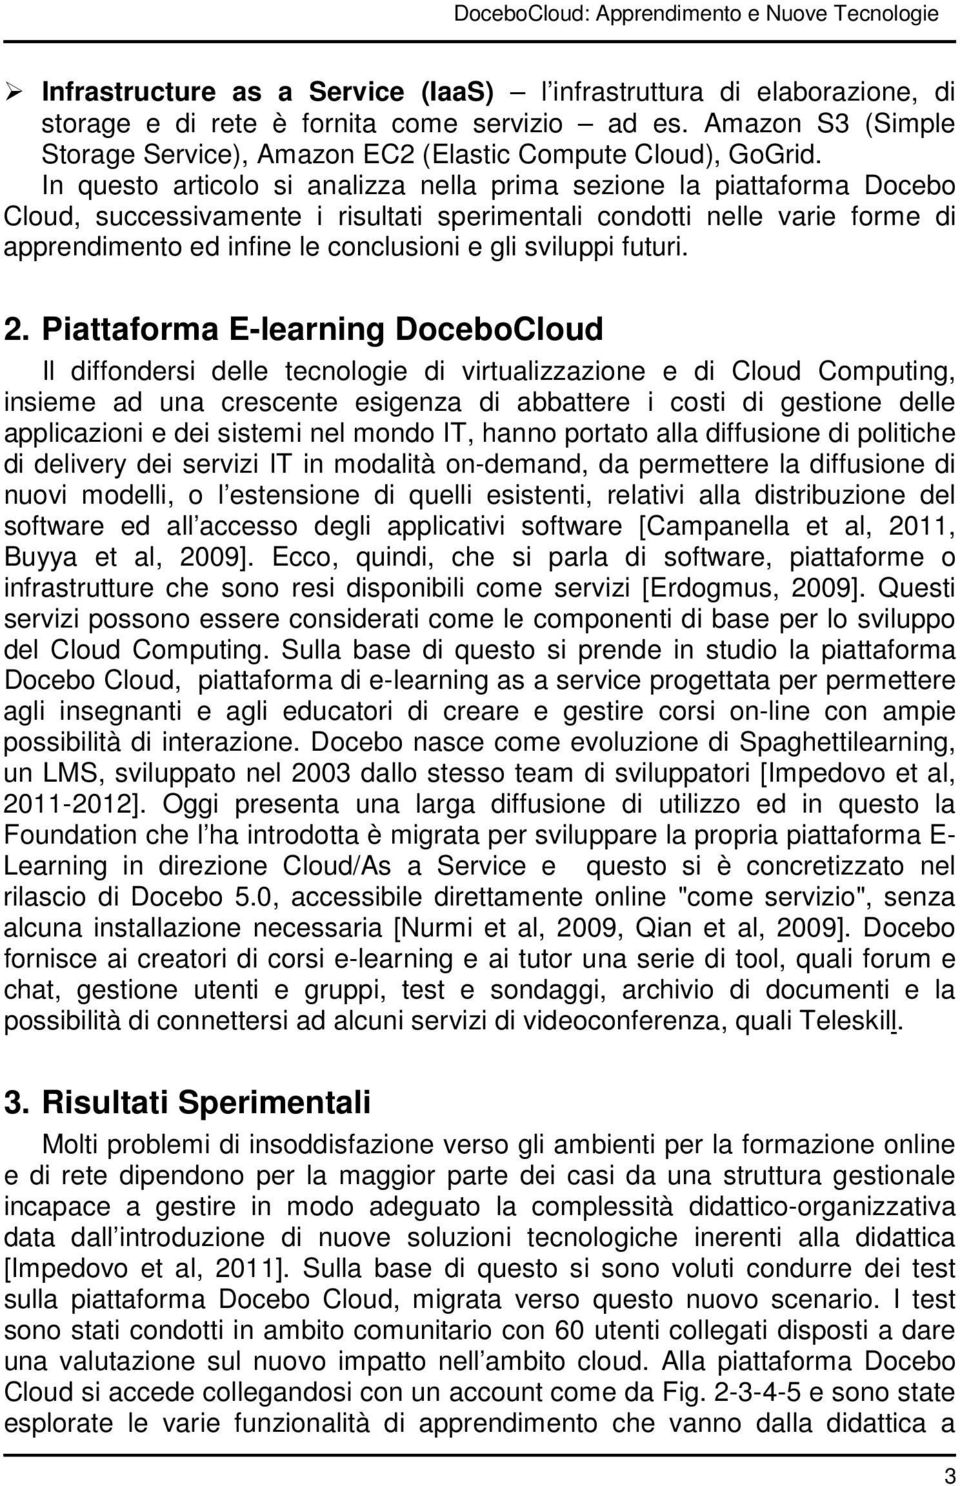 In questo articolo si analizza nella prima sezione la piattaforma Docebo Cloud, successivamente i risultati sperimentali condotti nelle varie forme di apprendimento ed infine le conclusioni e gli